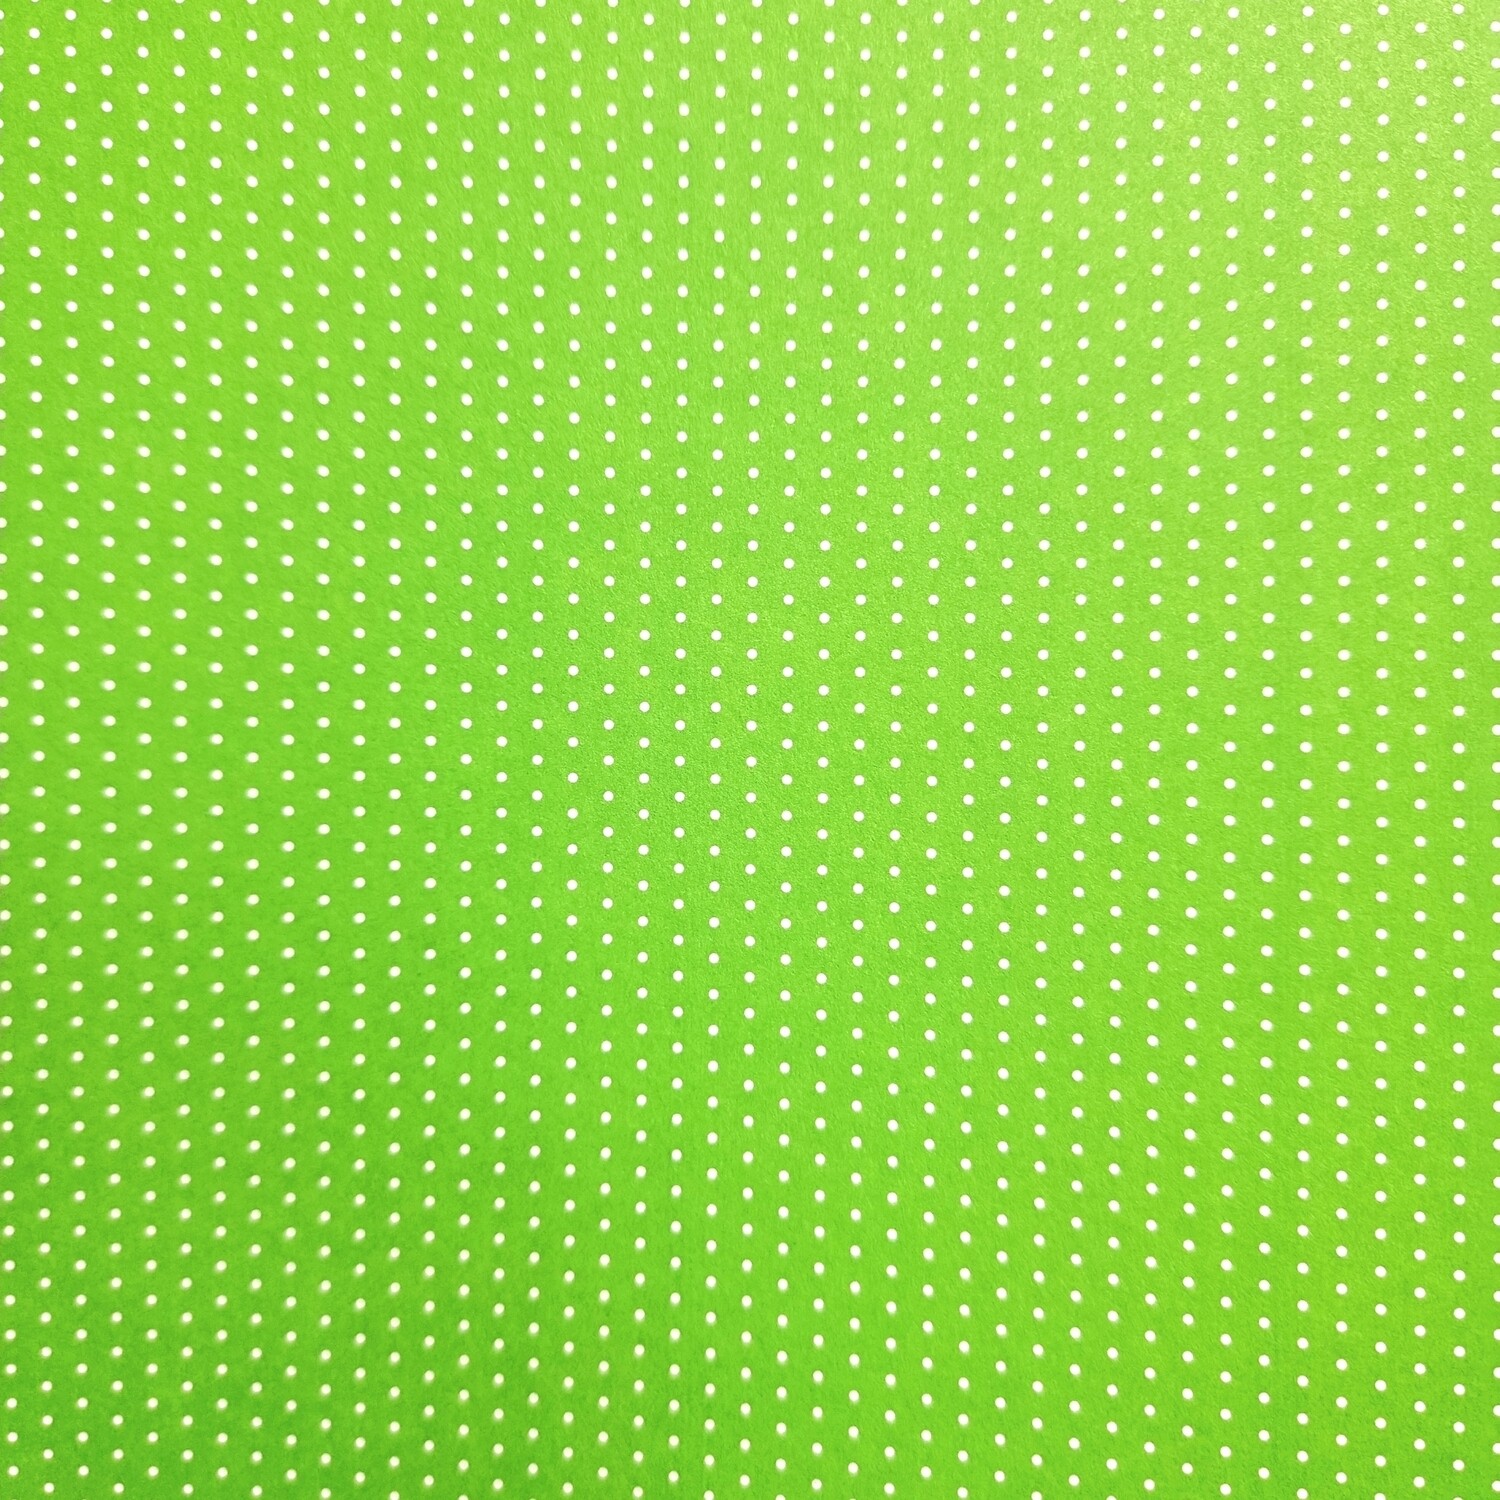 Motivpapier Mini Punkte hellgrün mit weißen Punkten